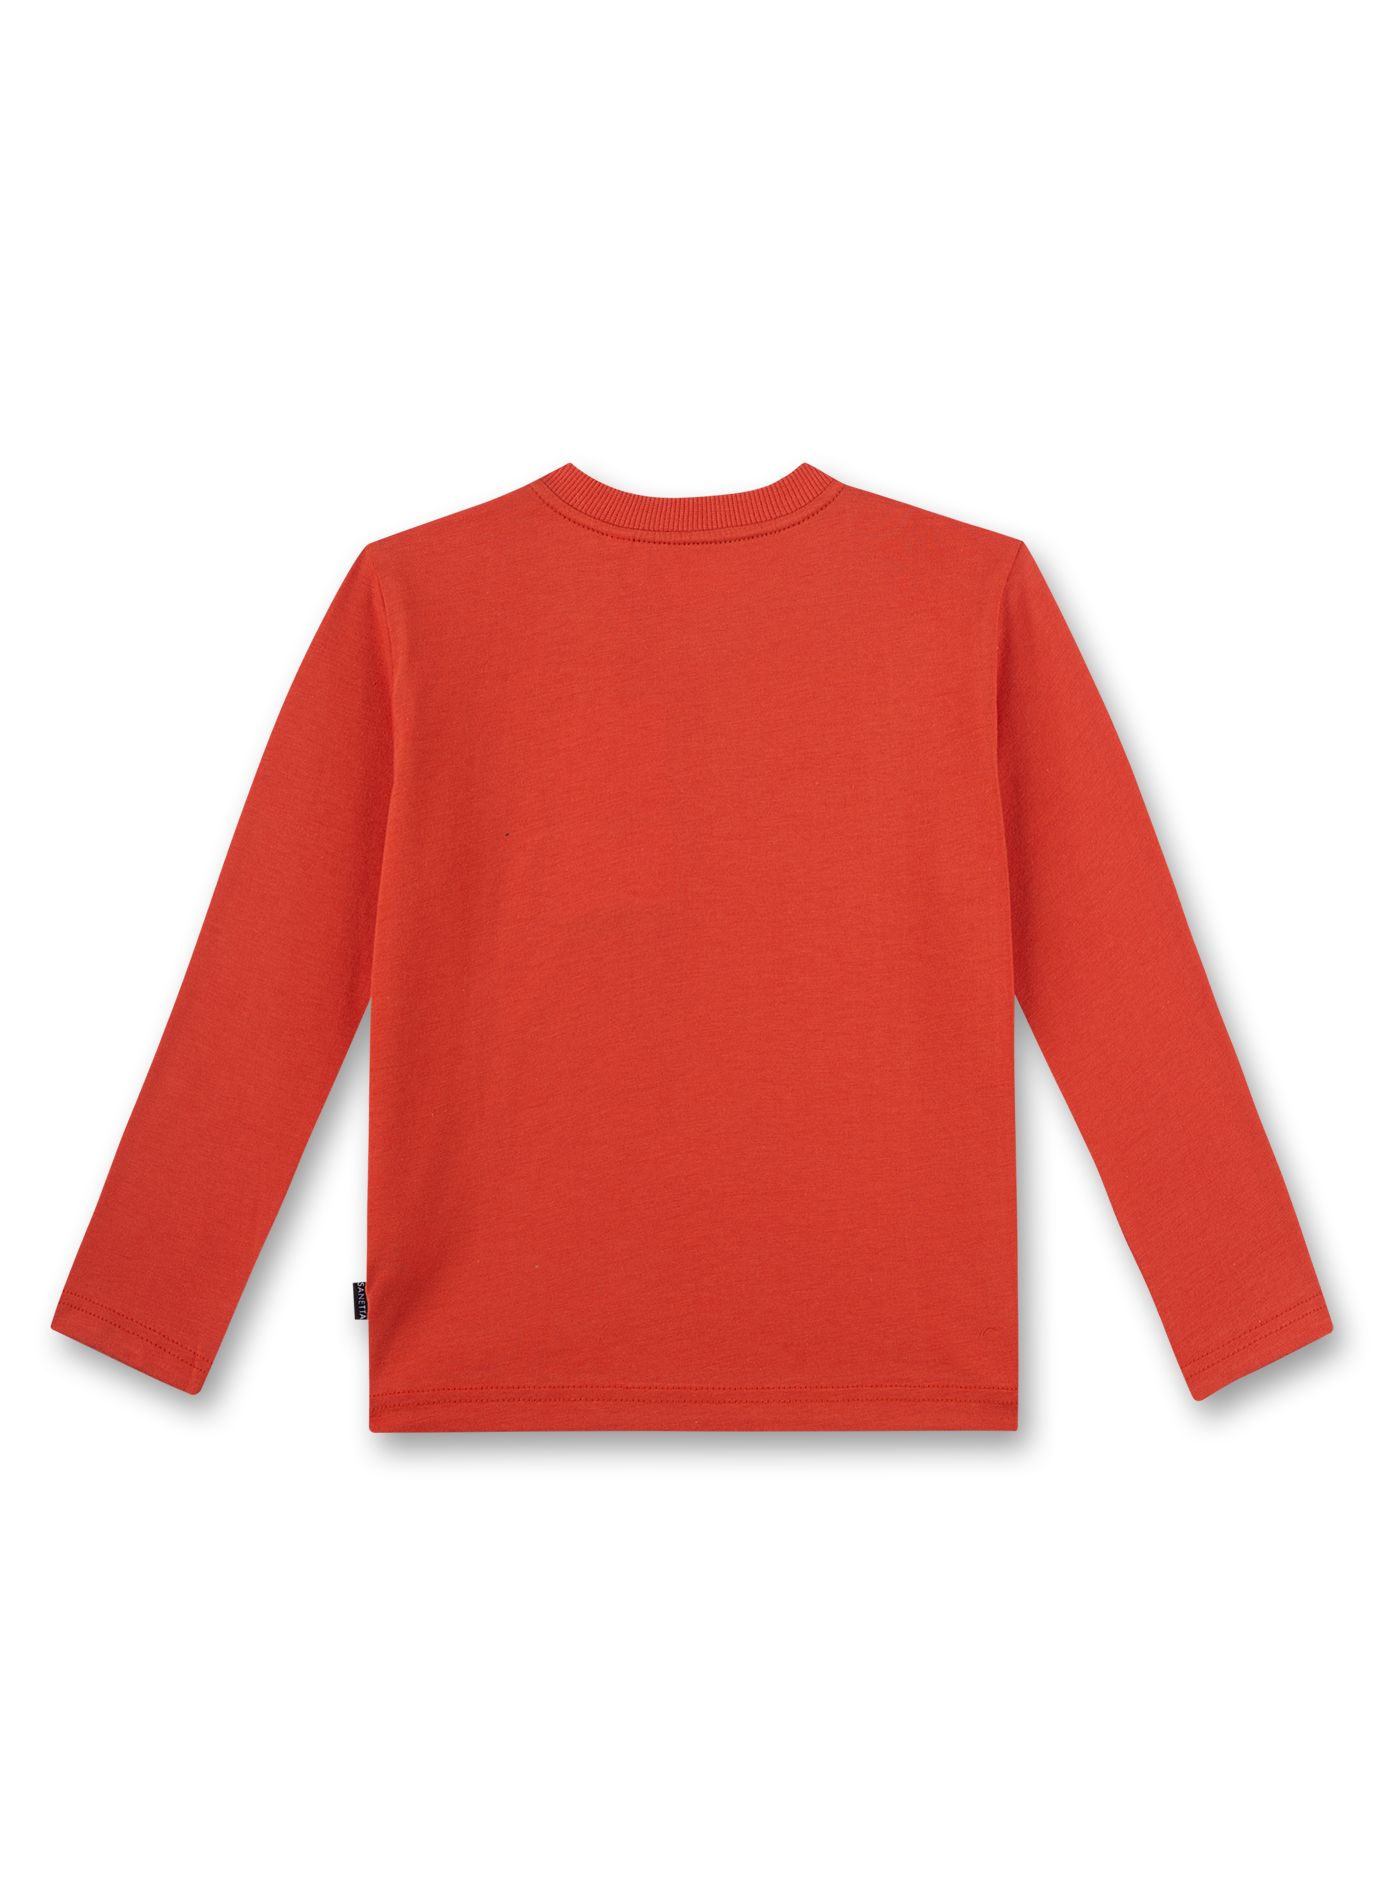 Jungen-Shirt langarm Orange